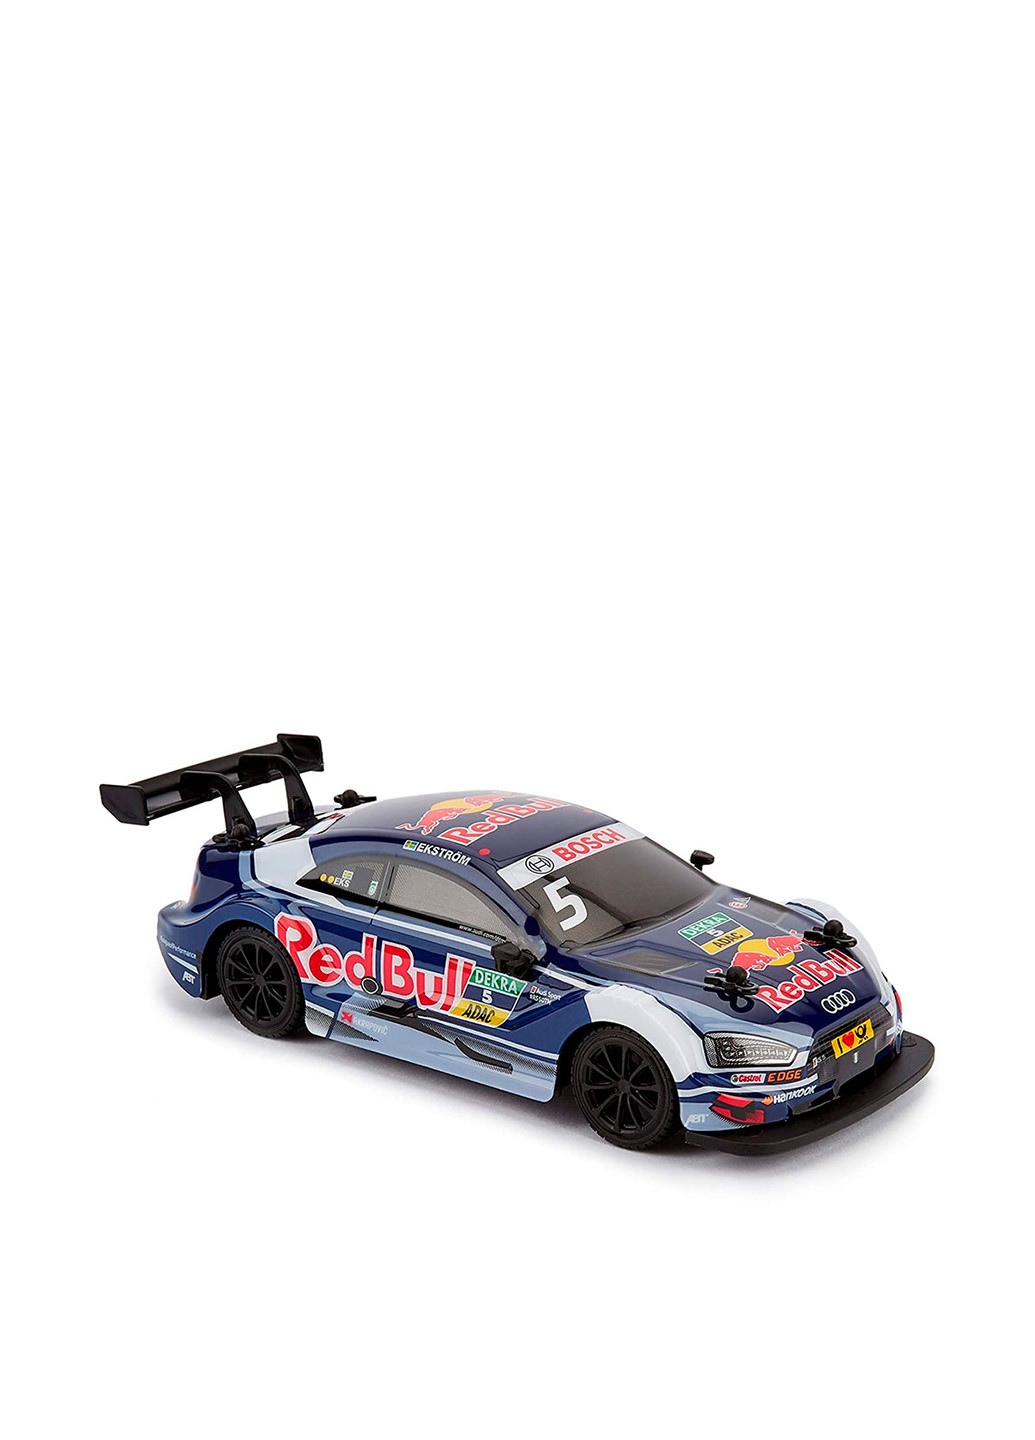 Автомобіль на радіокеруванні Audi RS 5 DTM Red Bull, 1:24 KS Drive (253483985)